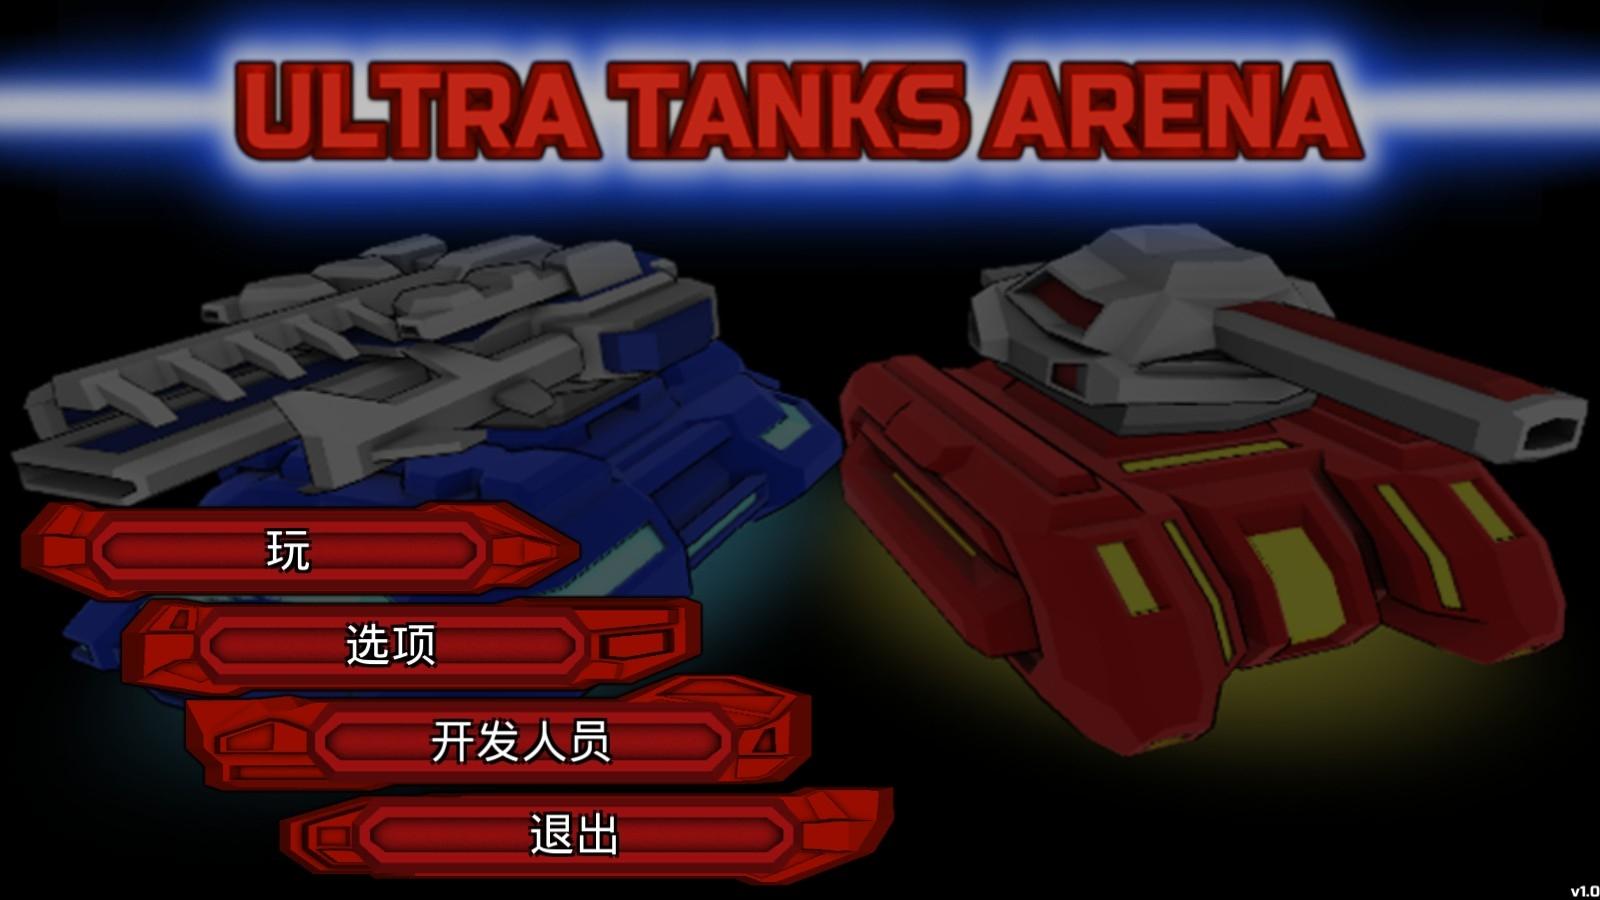 双人坦克完整解锁版下载,双人坦克,射击游戏,枪战游戏